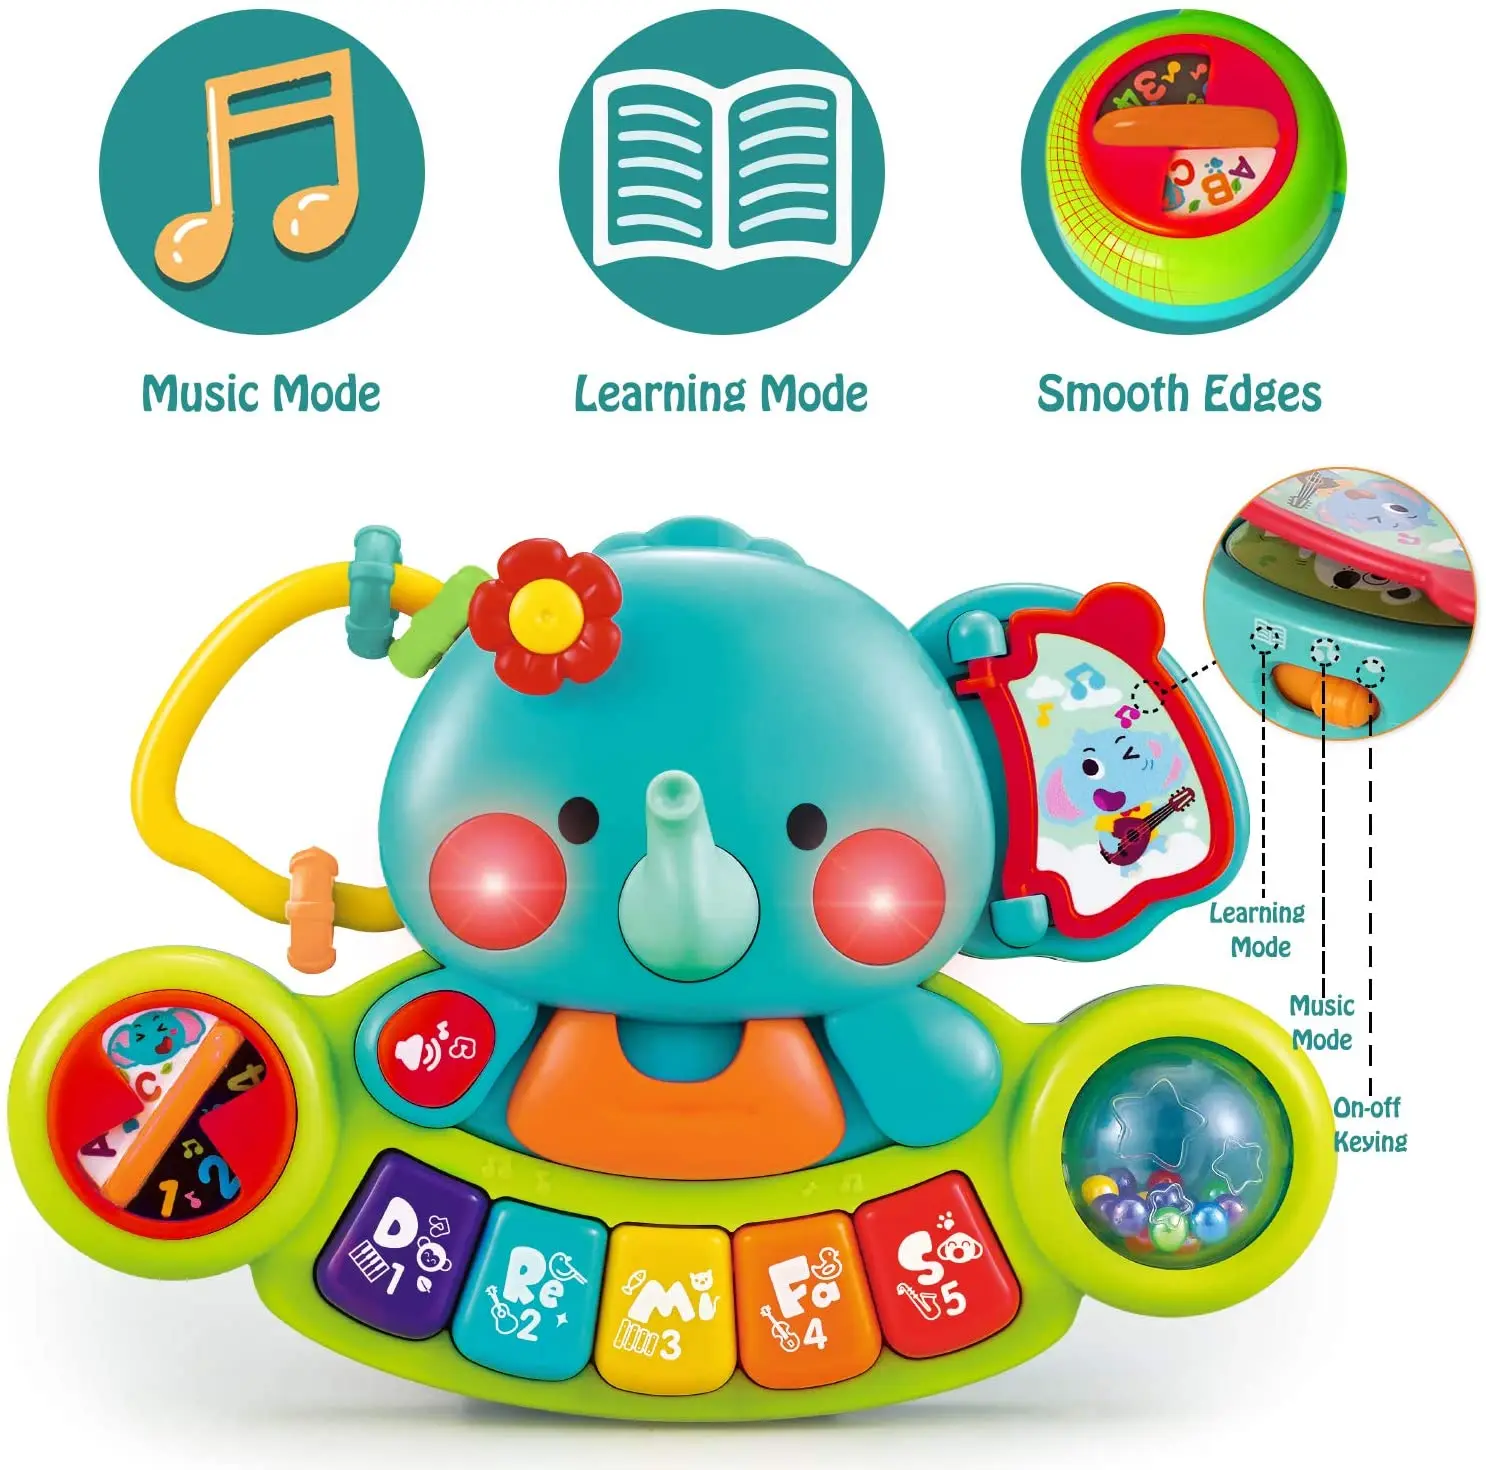 Детское пианино HISTOYE светильник ящиеся детские игрушки, музыкальные обучающие игрушки для младенцев, младенцев, слон, пианино, искусственны...